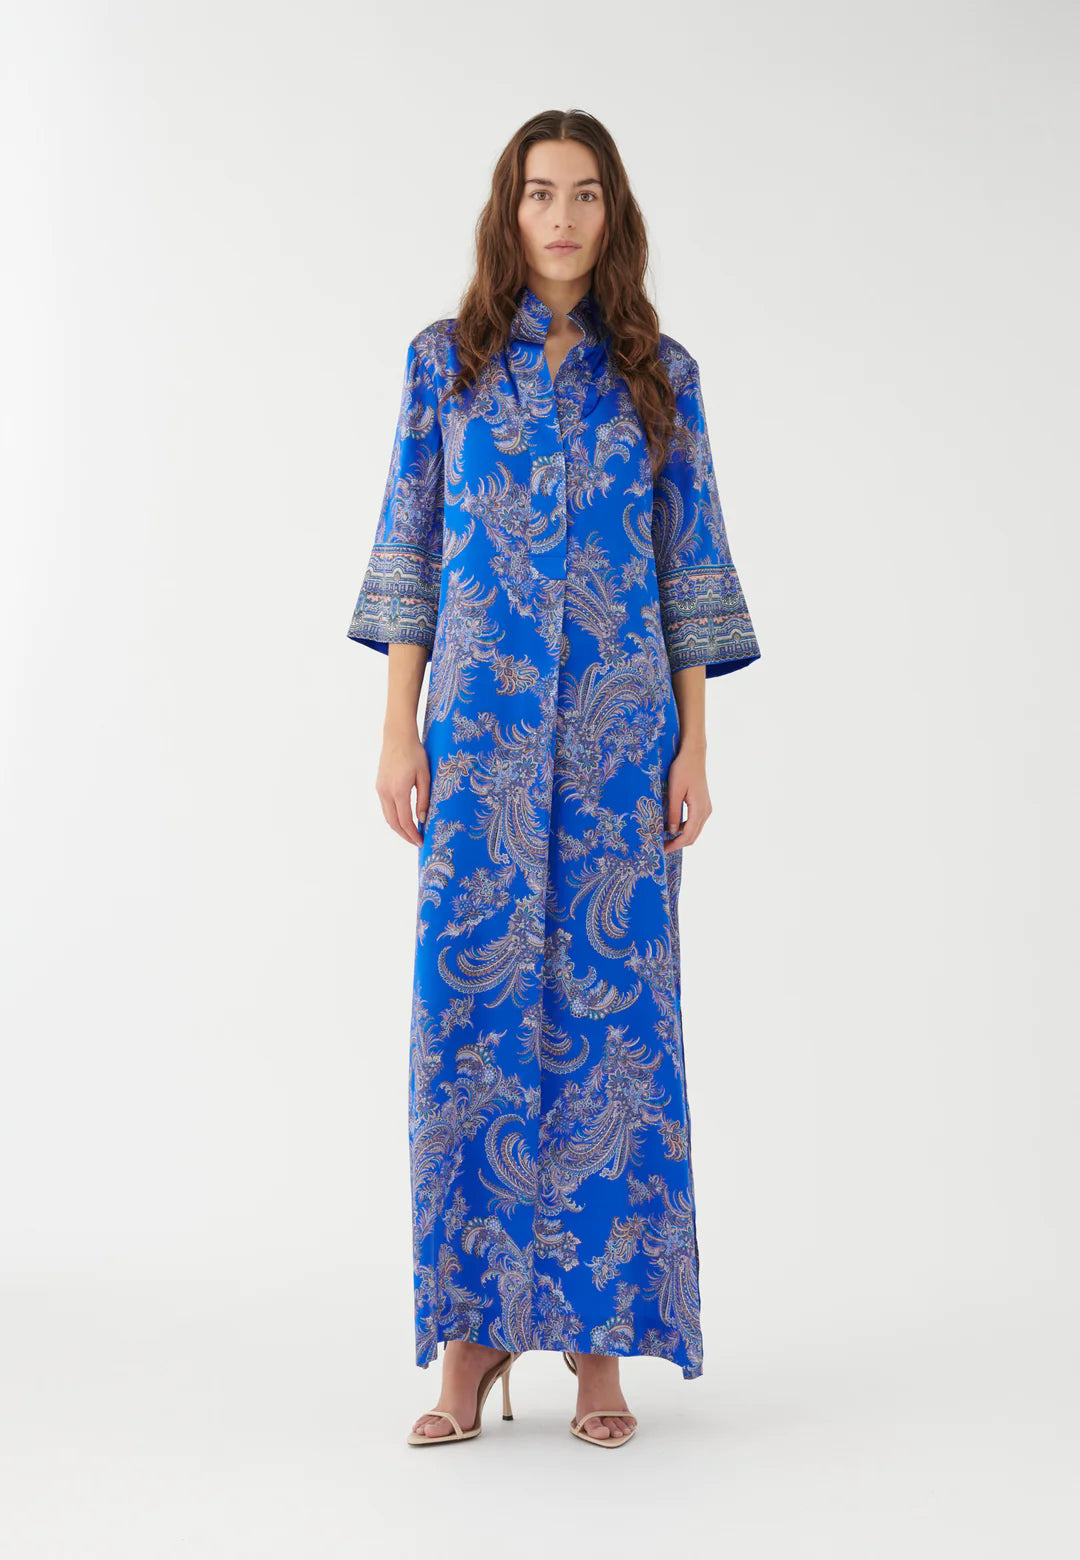 Dea Kudibal Helgadea Kimono Dress